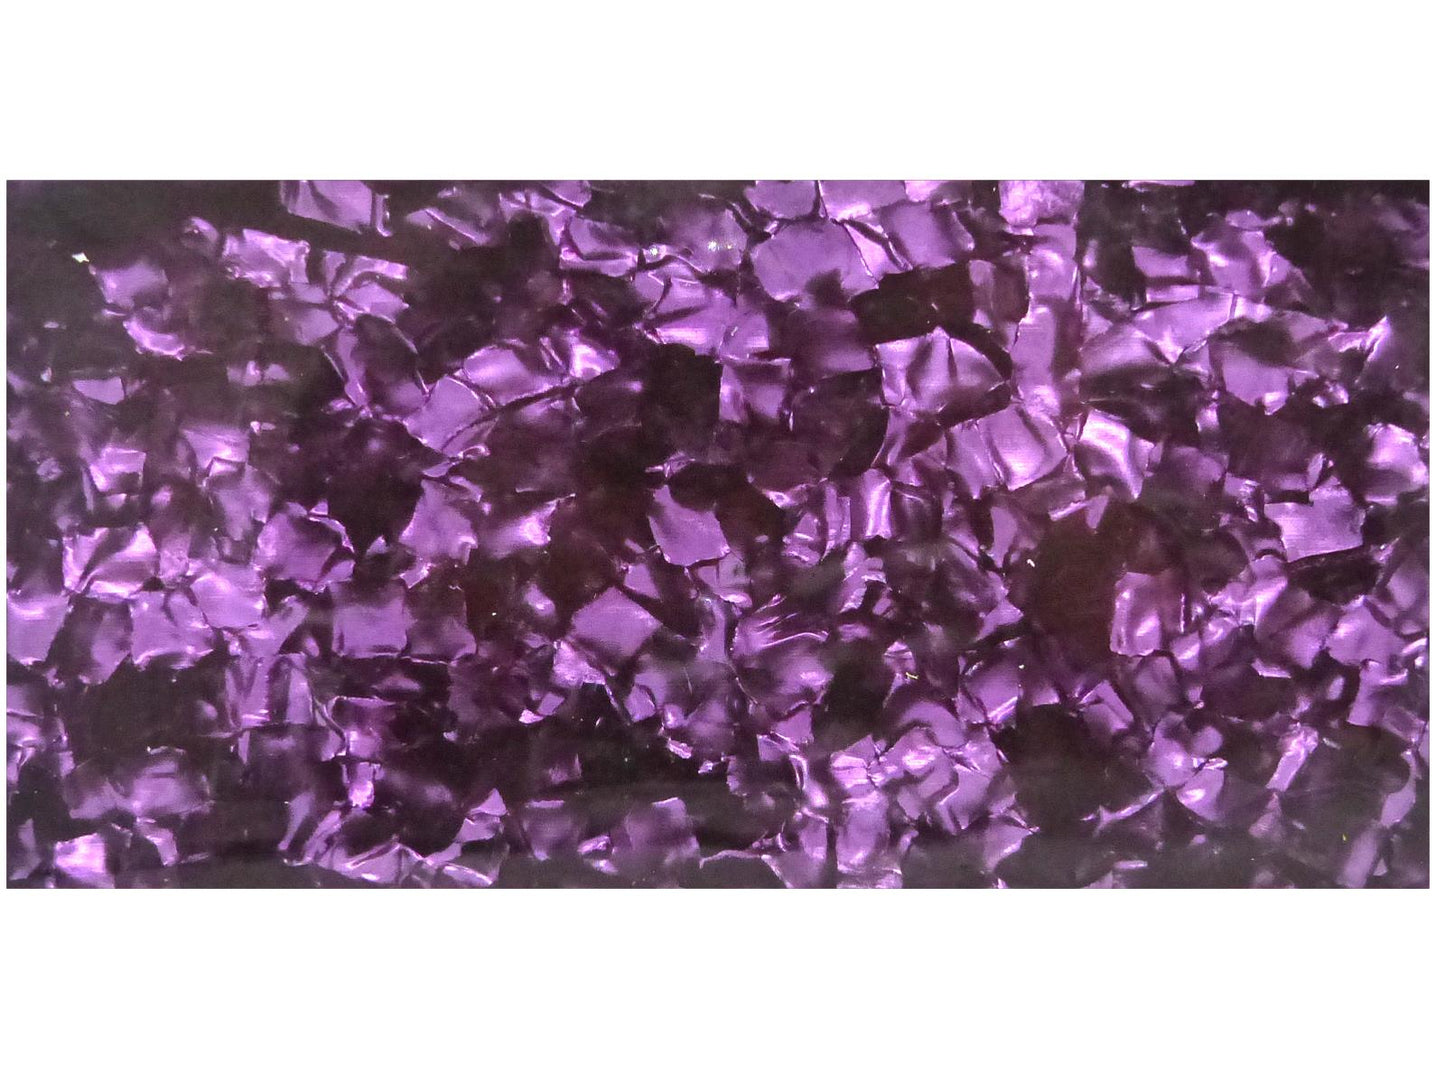 Incudo Purple Pearloid Celluloid Sheet - 200x100x0.96mm (7.9x3.94x0.04")